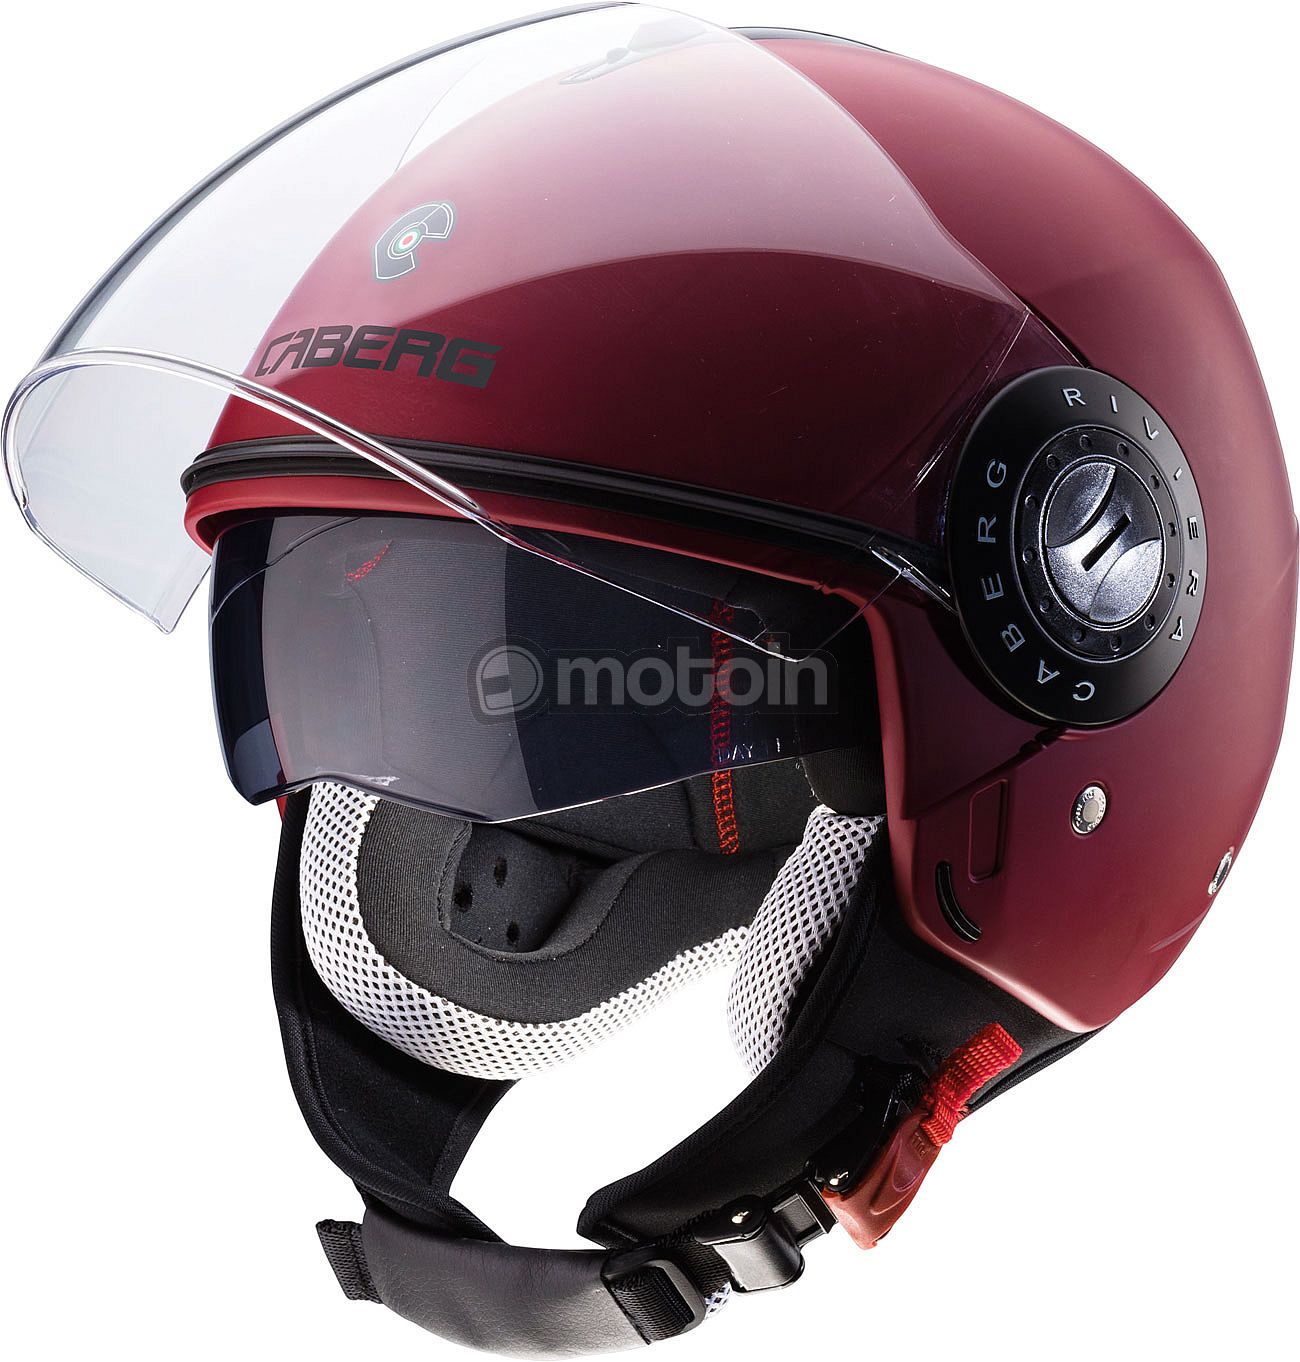 liner loss emulsion Caberg Riviera V3 Solid, jet helmet - motoin.de